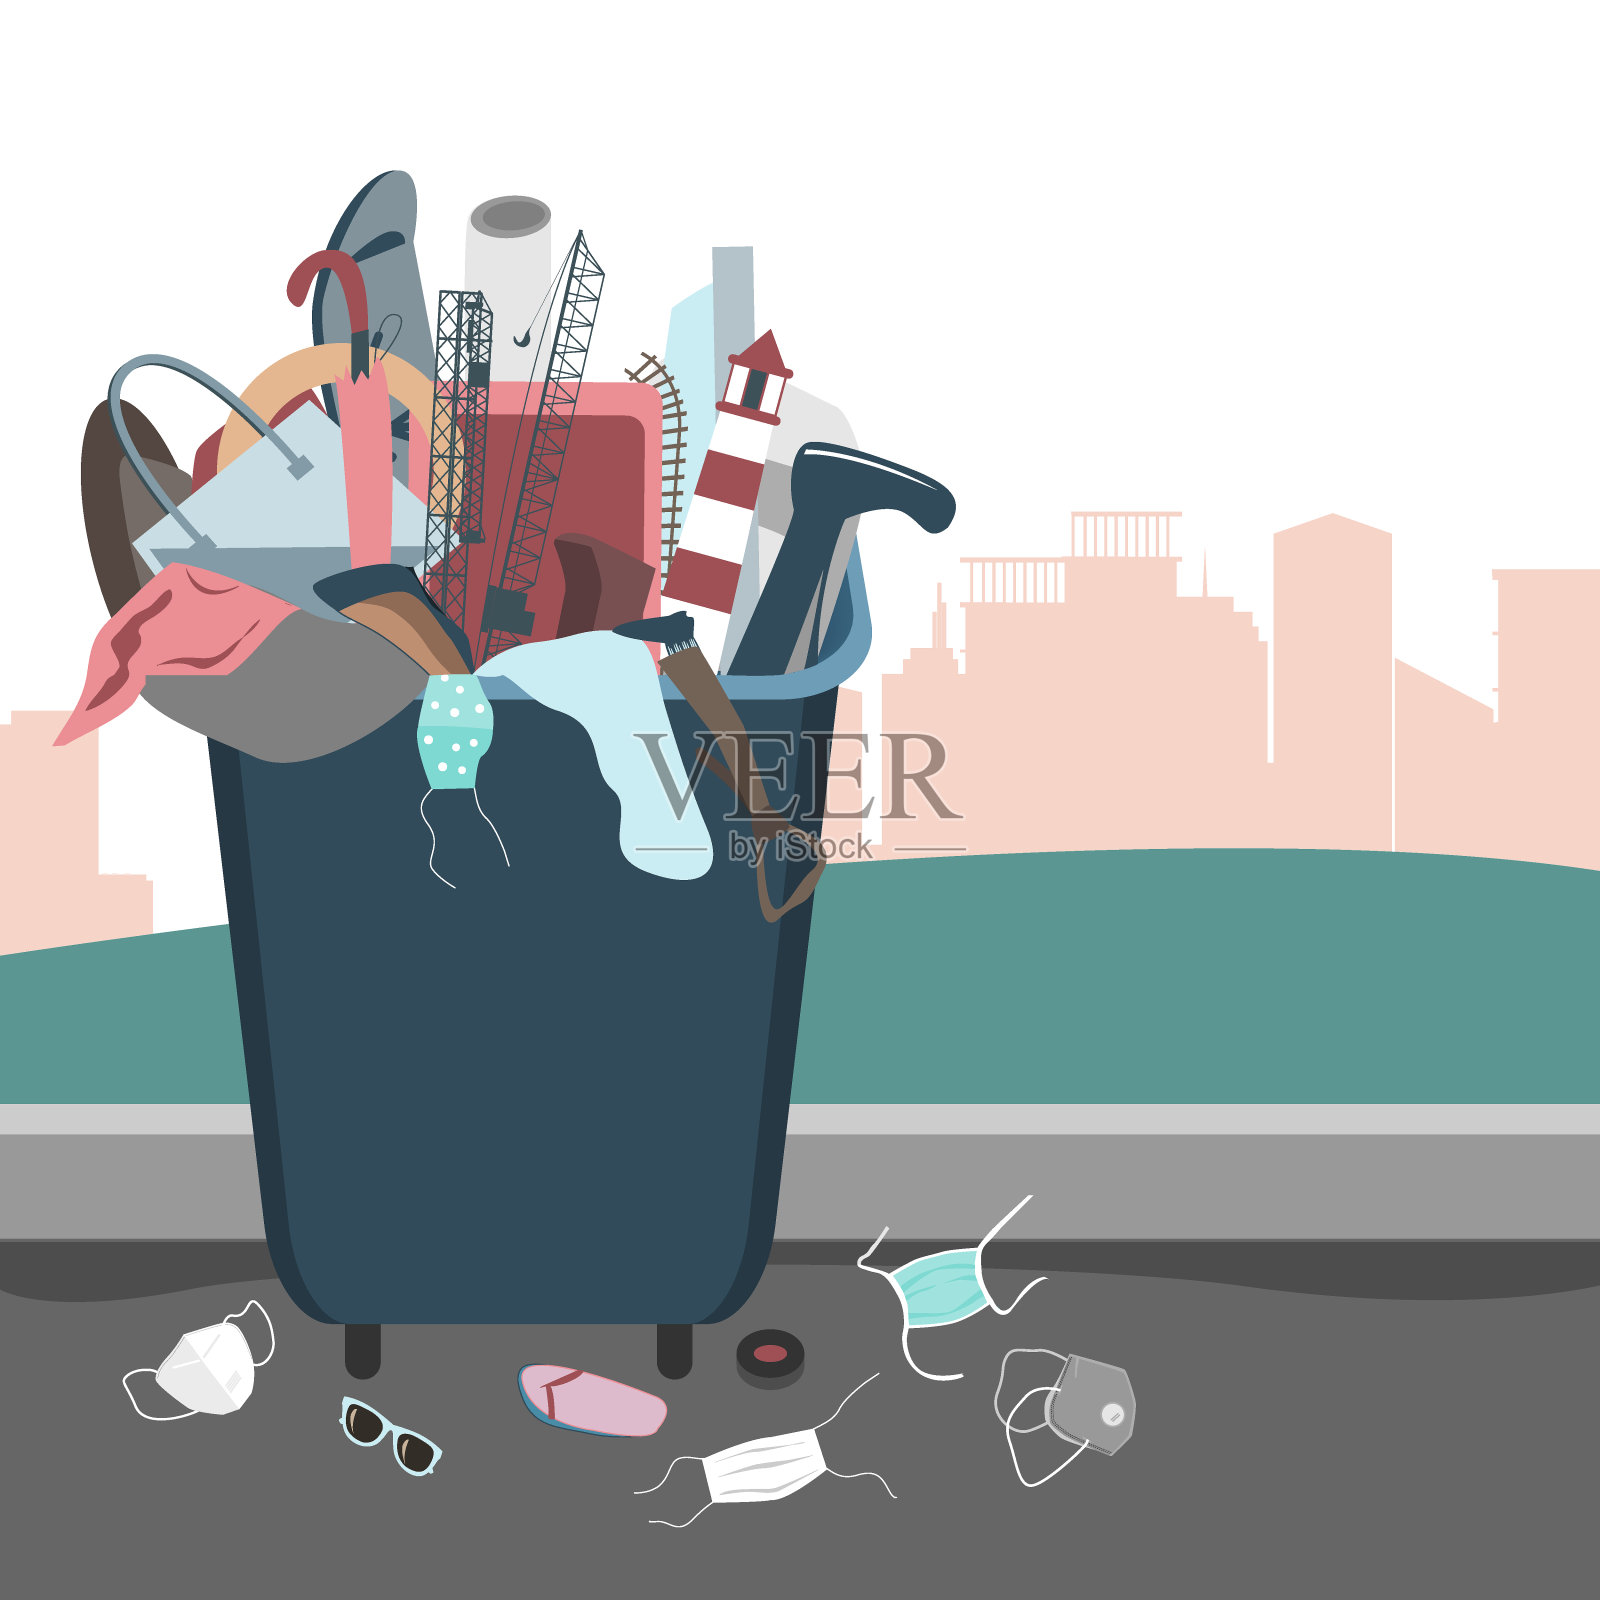 一次性医用口罩扔在垃圾桶附近的地上。冠状病毒爆发期间的环境污染概念插画图片素材